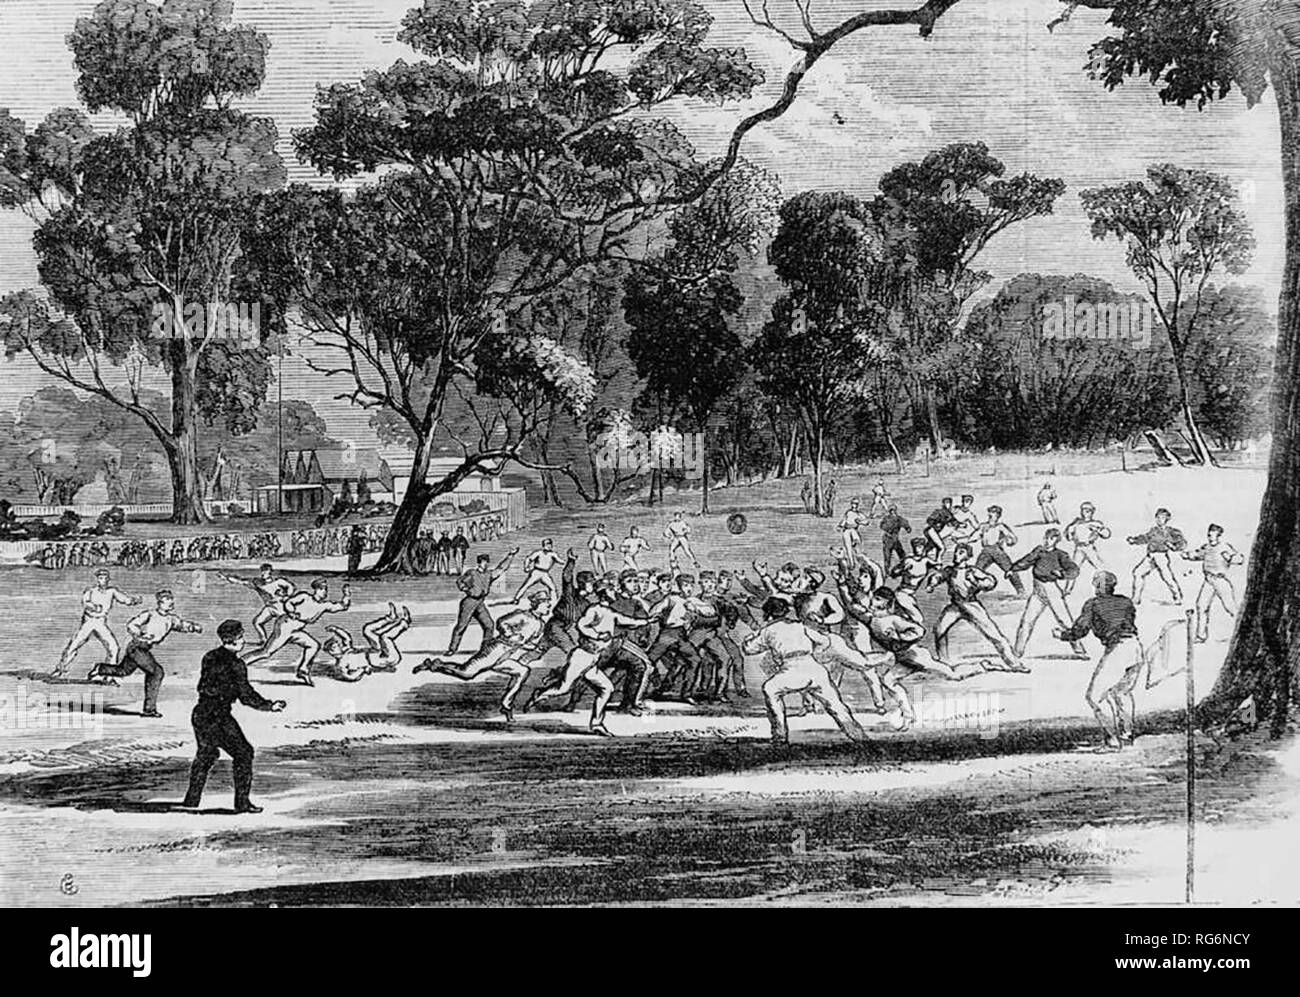 Grabado en madera de un partido de fútbol australiano en el Richmond Paddock, Melbourne, aproximadamente en 1866. El edificio del fondo es el Melbourne Cricket Ground, el pabellón. Julio de 1866 Foto de stock